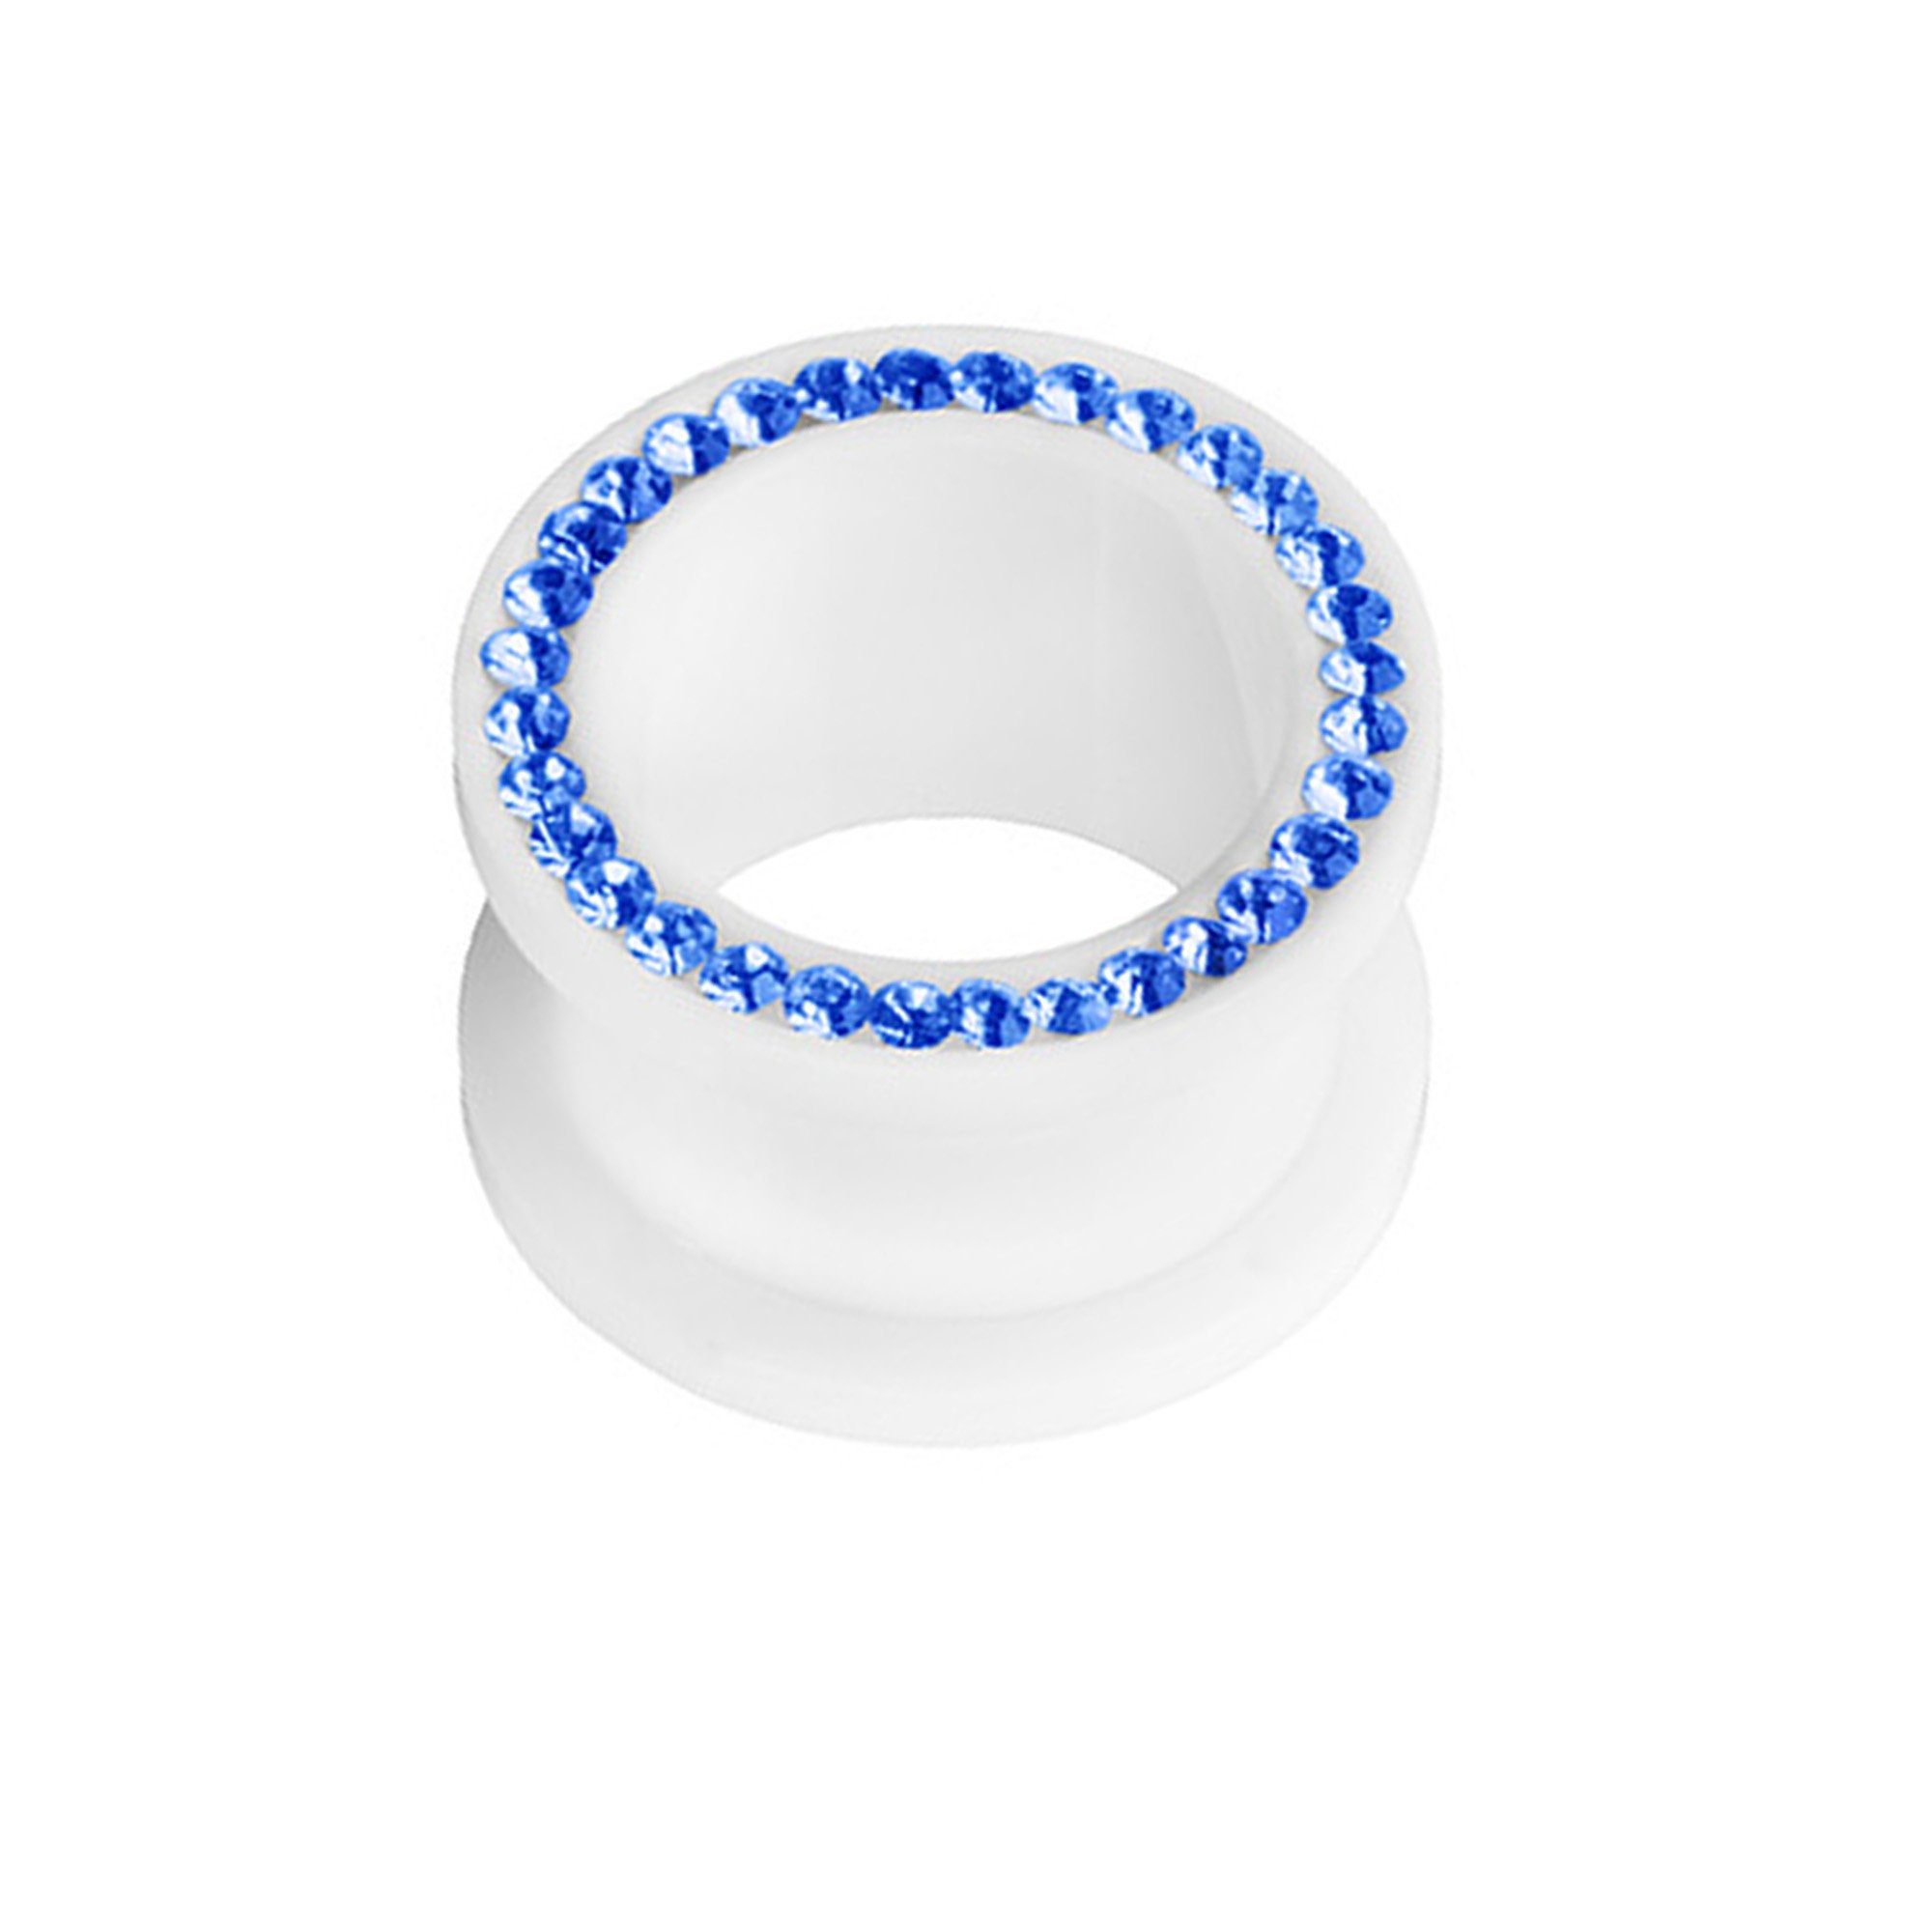 Kristallen Kunststoff Plug Plug mit Kristallen, Schraub Ohr Tunnel Kunststoff farbigen farbigen Taffstyle Piercing Piercing Blau Flesh